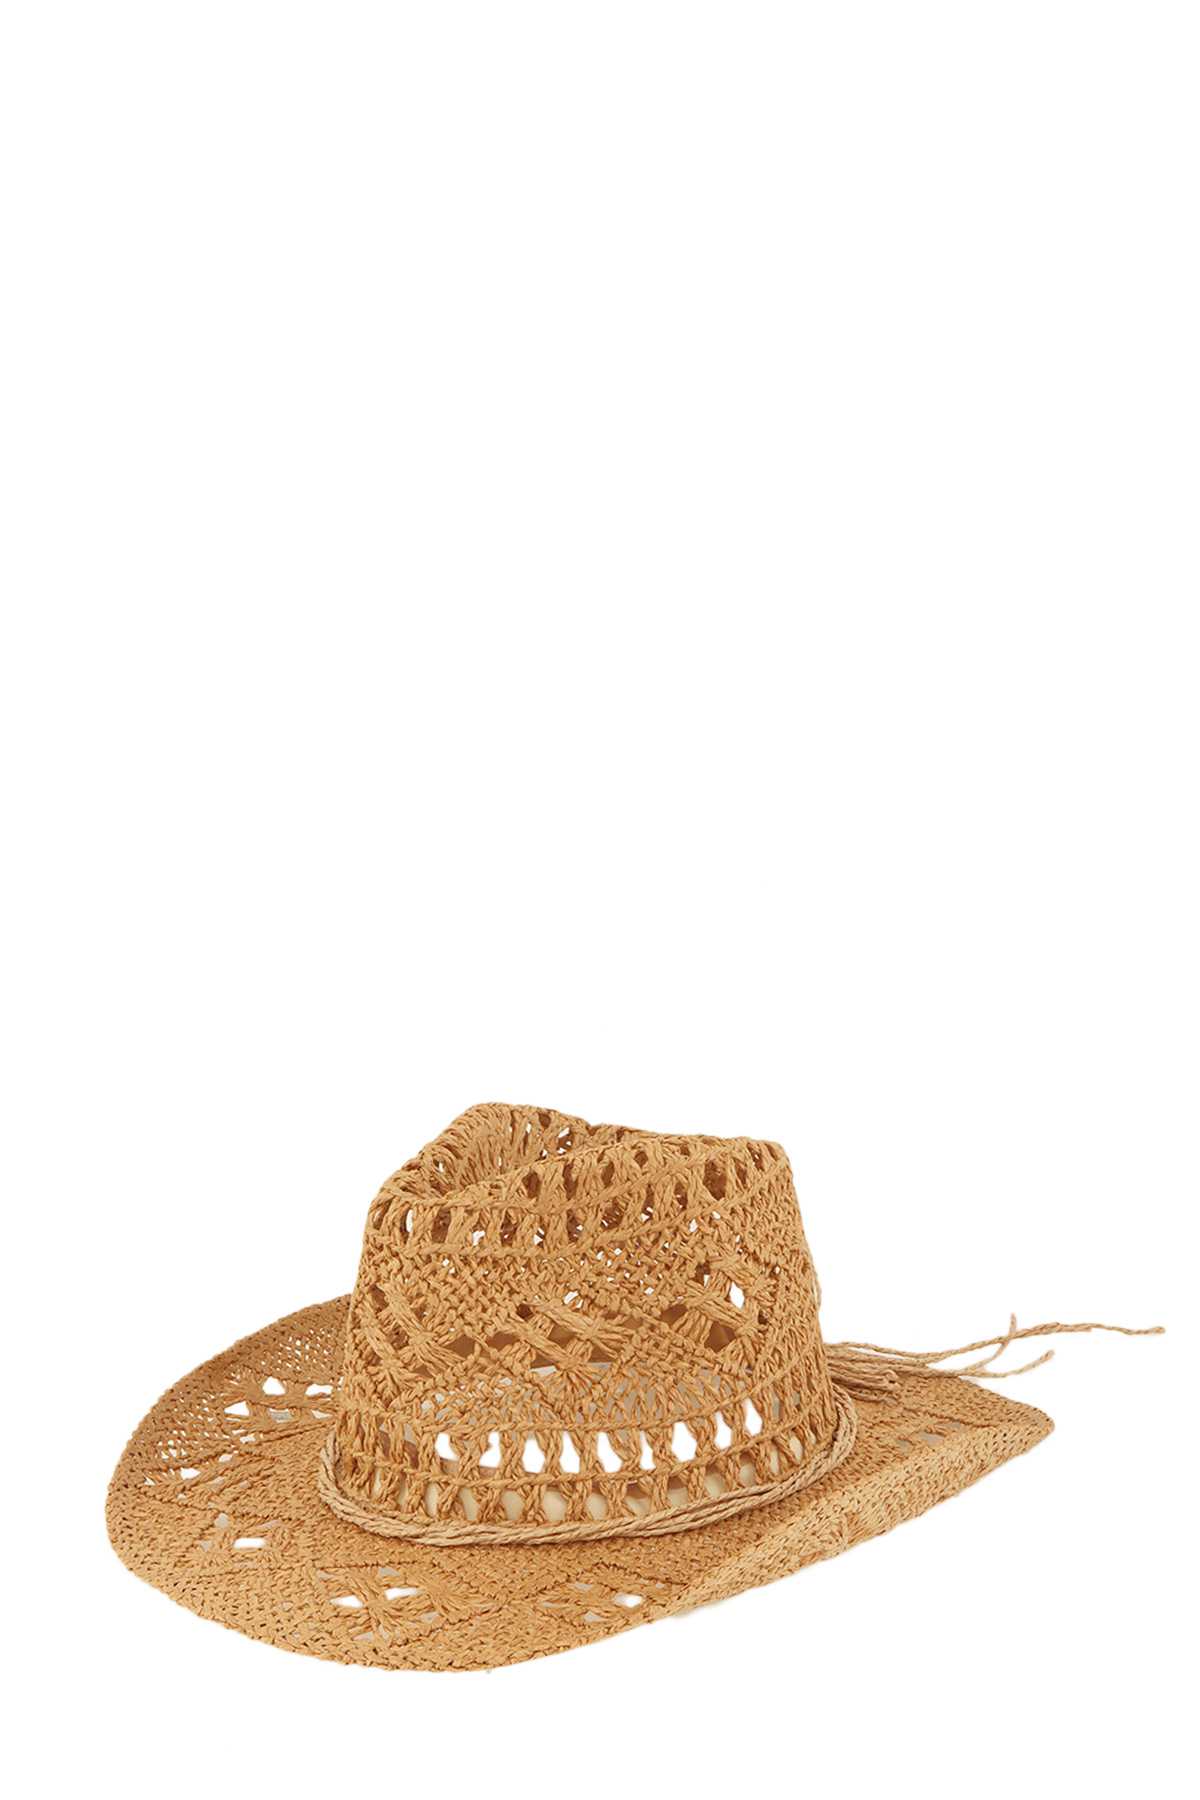 Straw Braided Cowboy Sun Hat